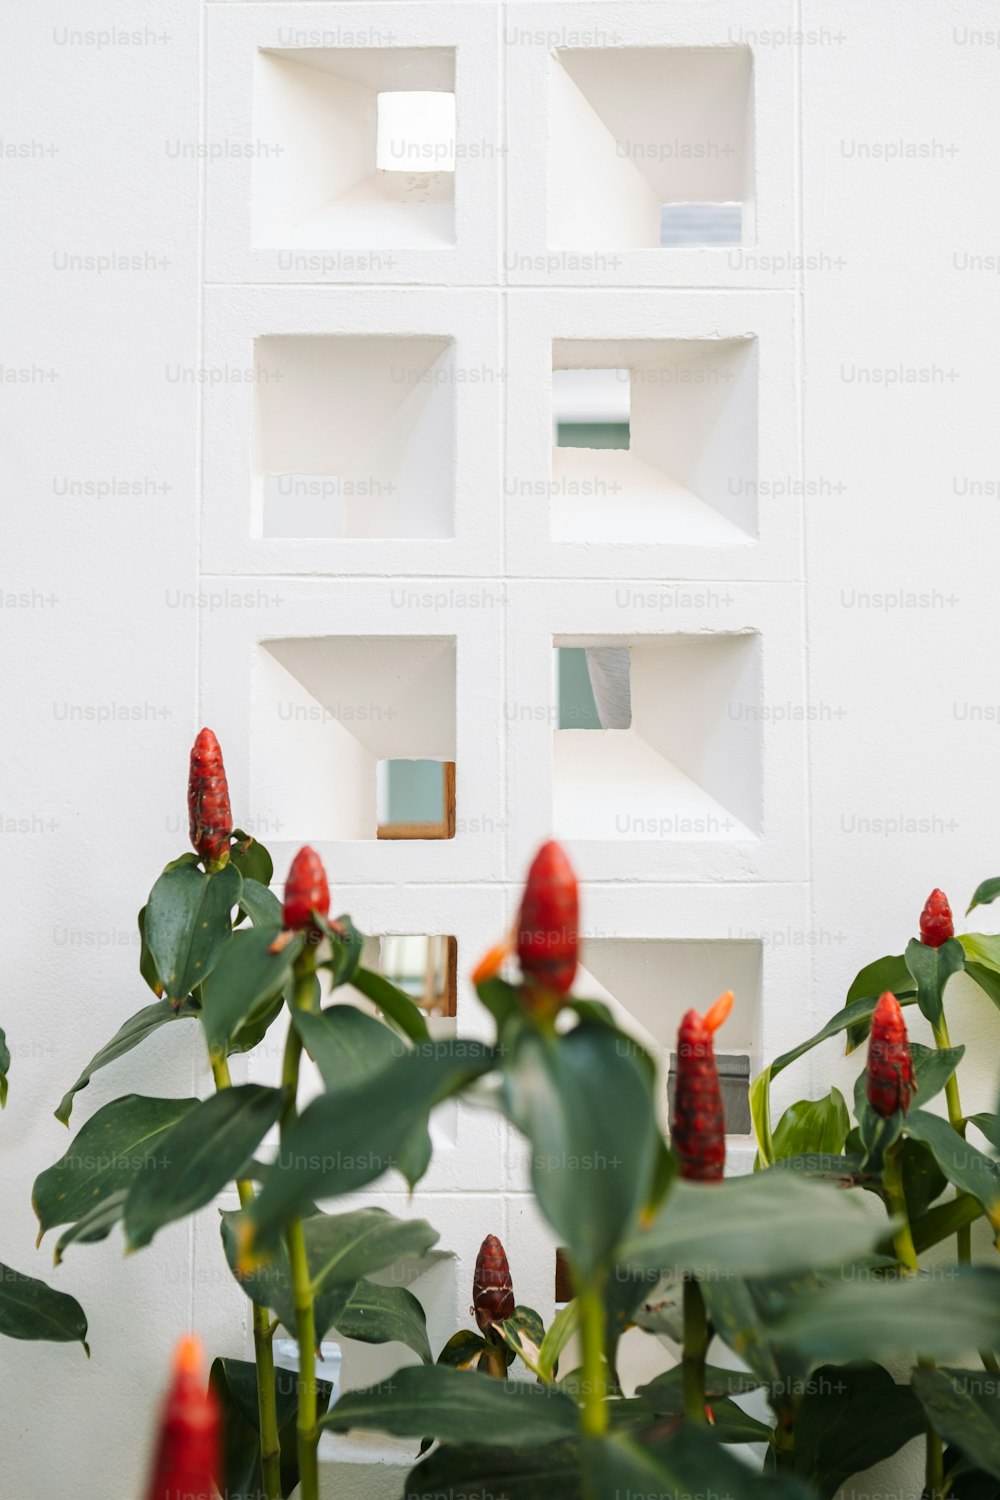 une plante aux fleurs rouges devant un mur blanc